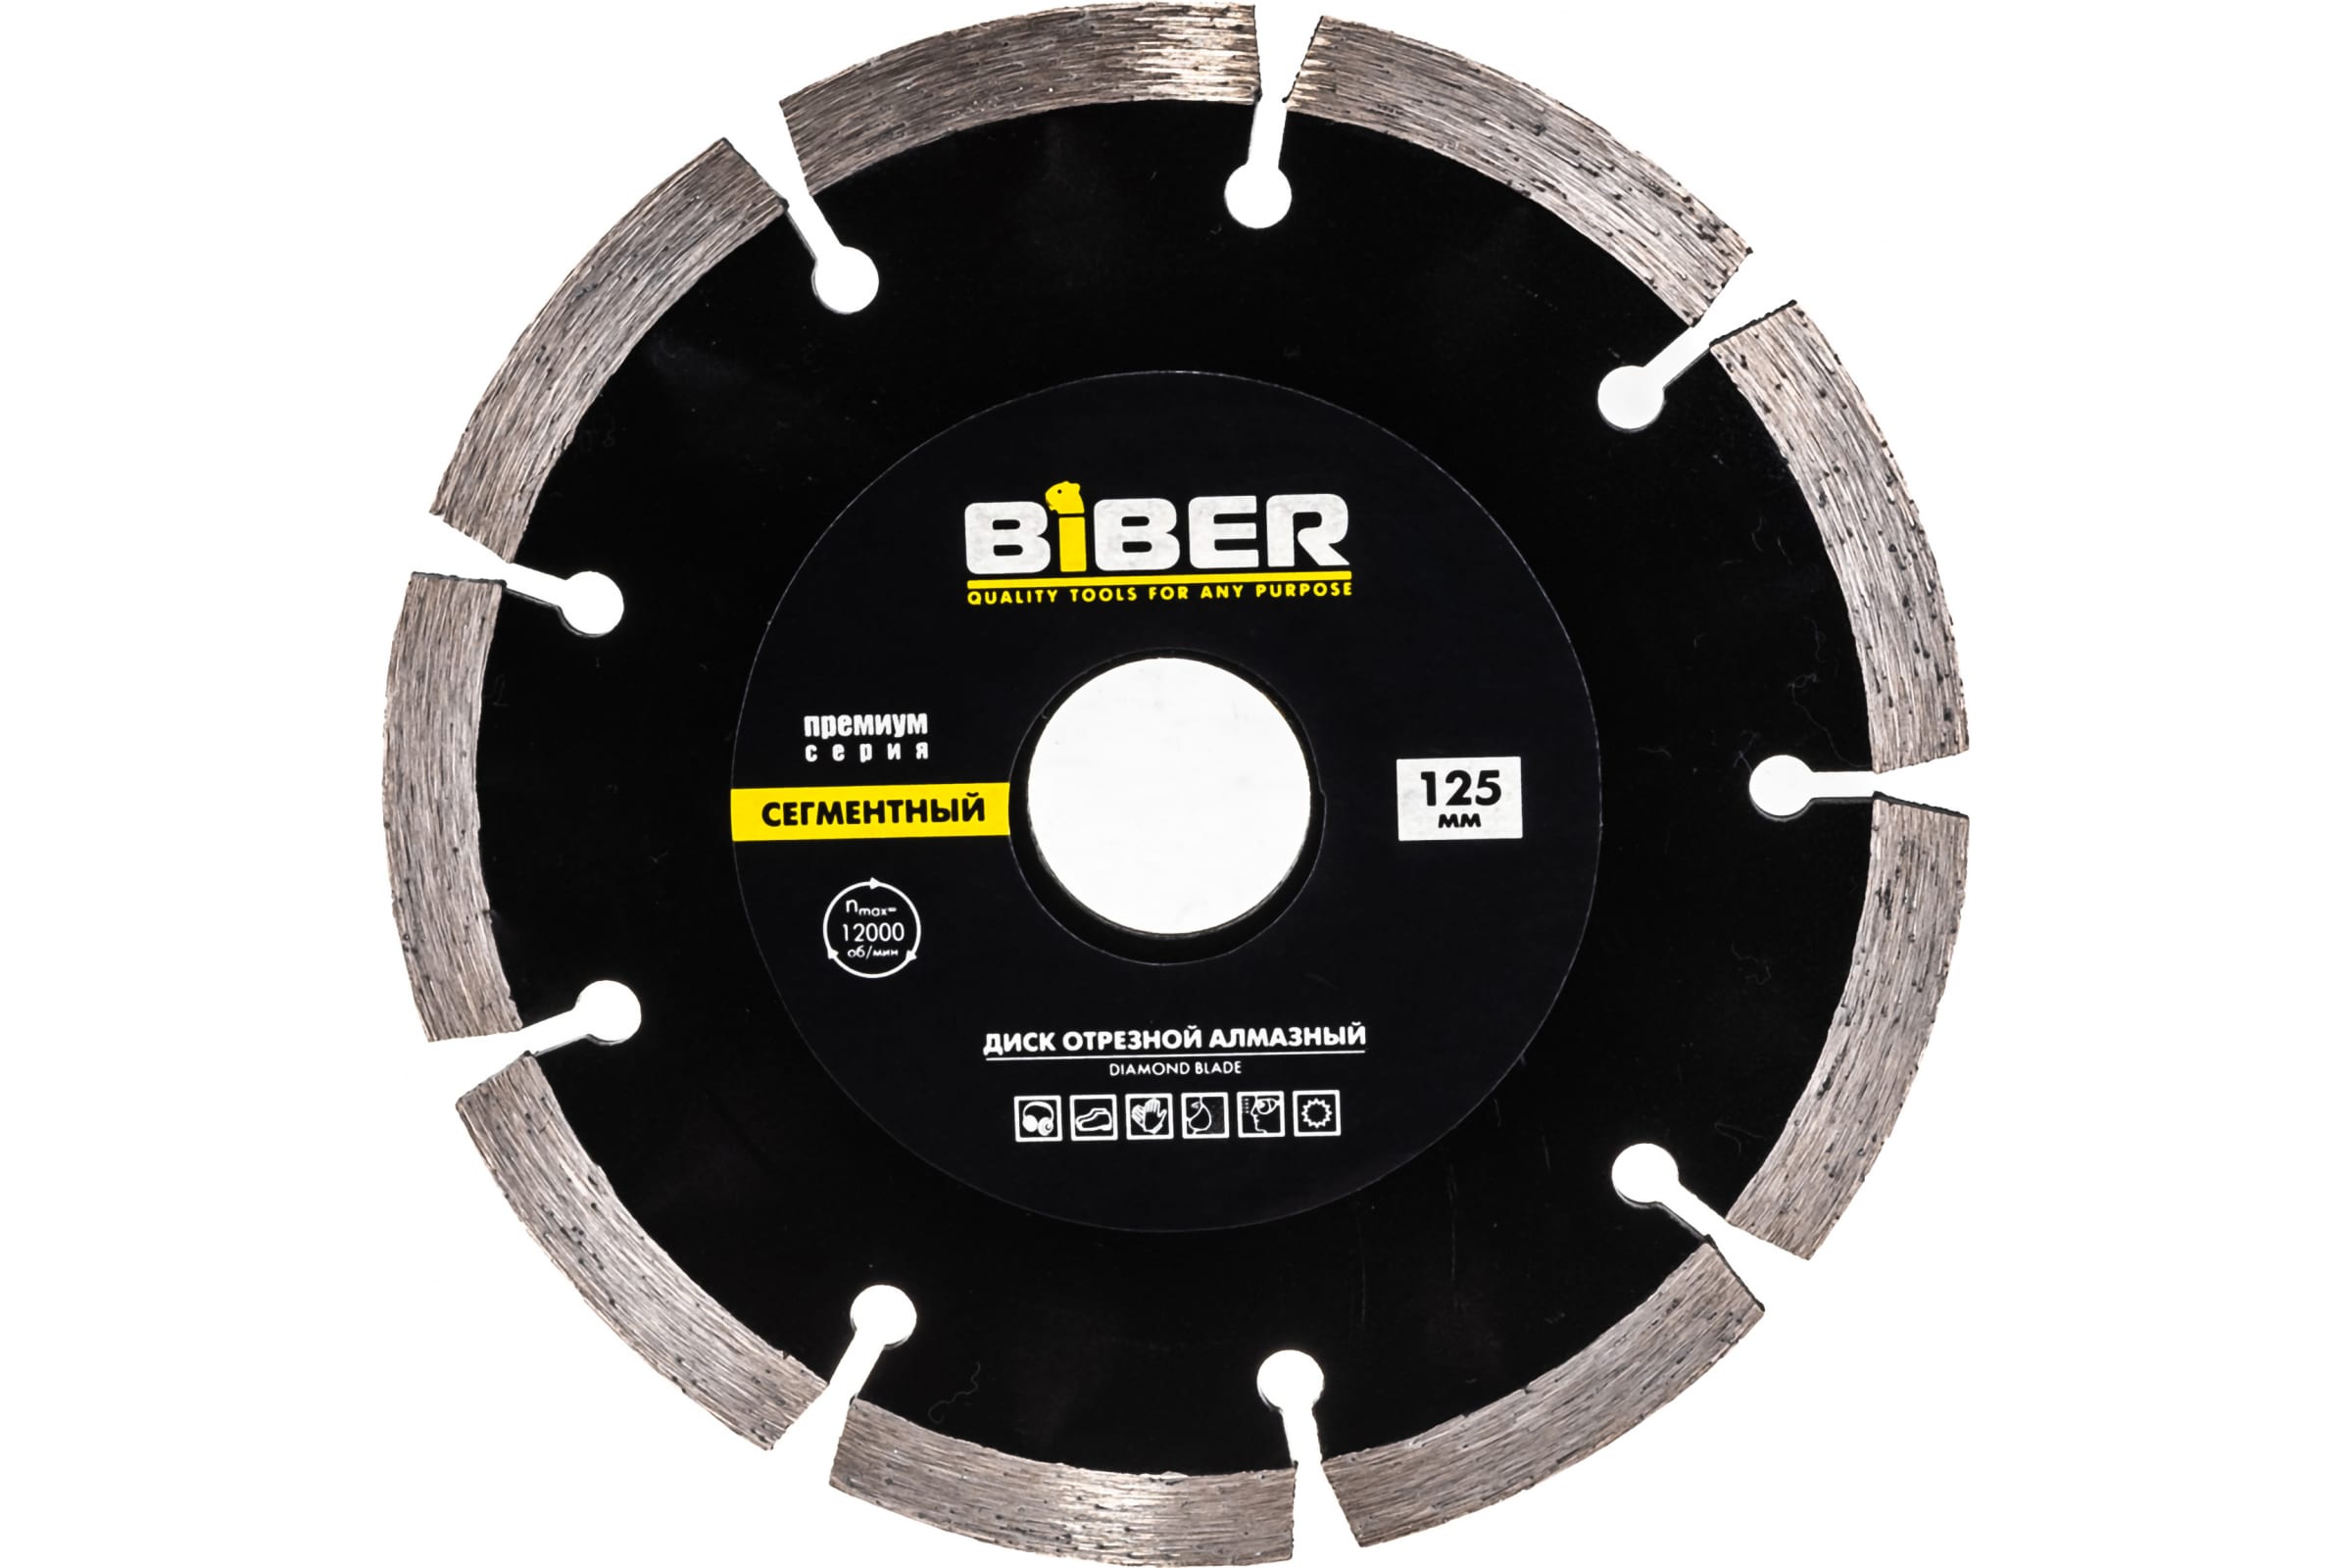 фото Biber диск алмазный сегментный премиум 125мм 70263 тов-039552